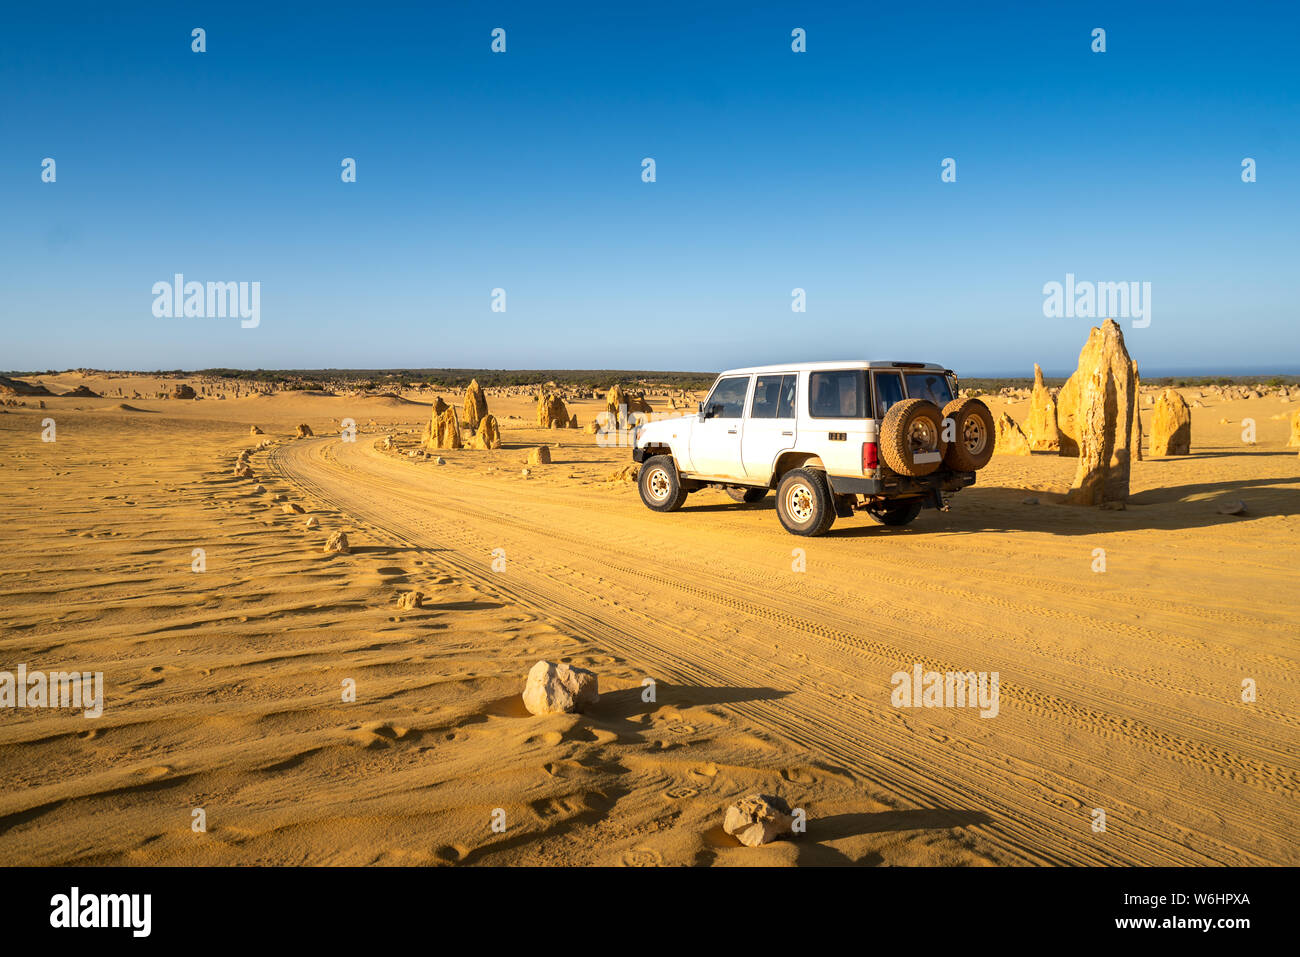 Quatre roues motrices voiture sur Pinnacles Drive, route de terre Désert des Pinnacles, dans le Parc National de Nambung, Australie occidentale, Australie.. Banque D'Images